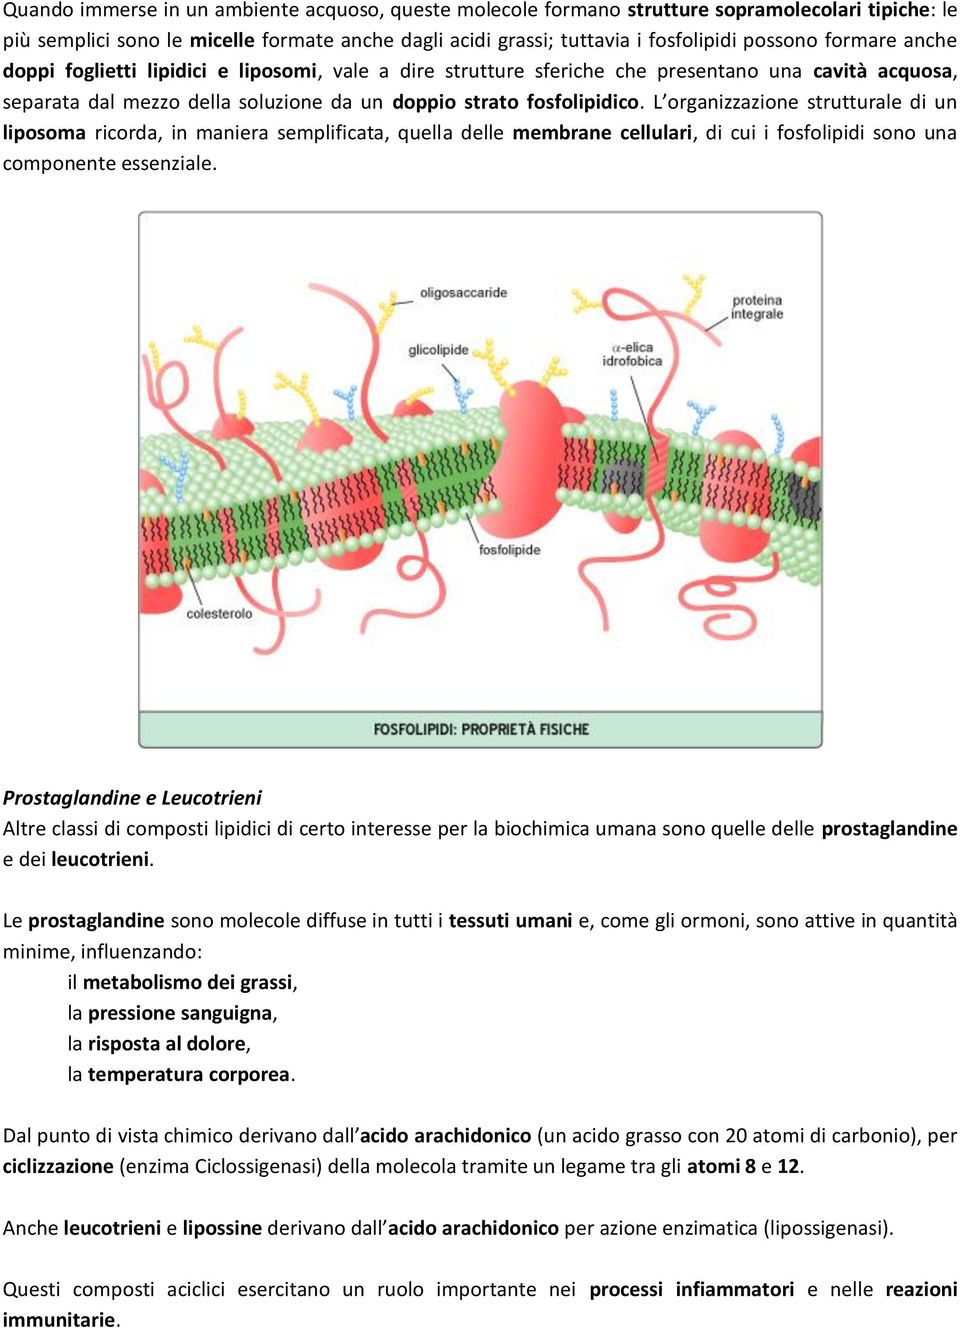 L organizzazione strutturale di un liposoma ricorda, in maniera semplificata, quella delle membrane cellulari, di cui i fosfolipidi sono una componente essenziale.